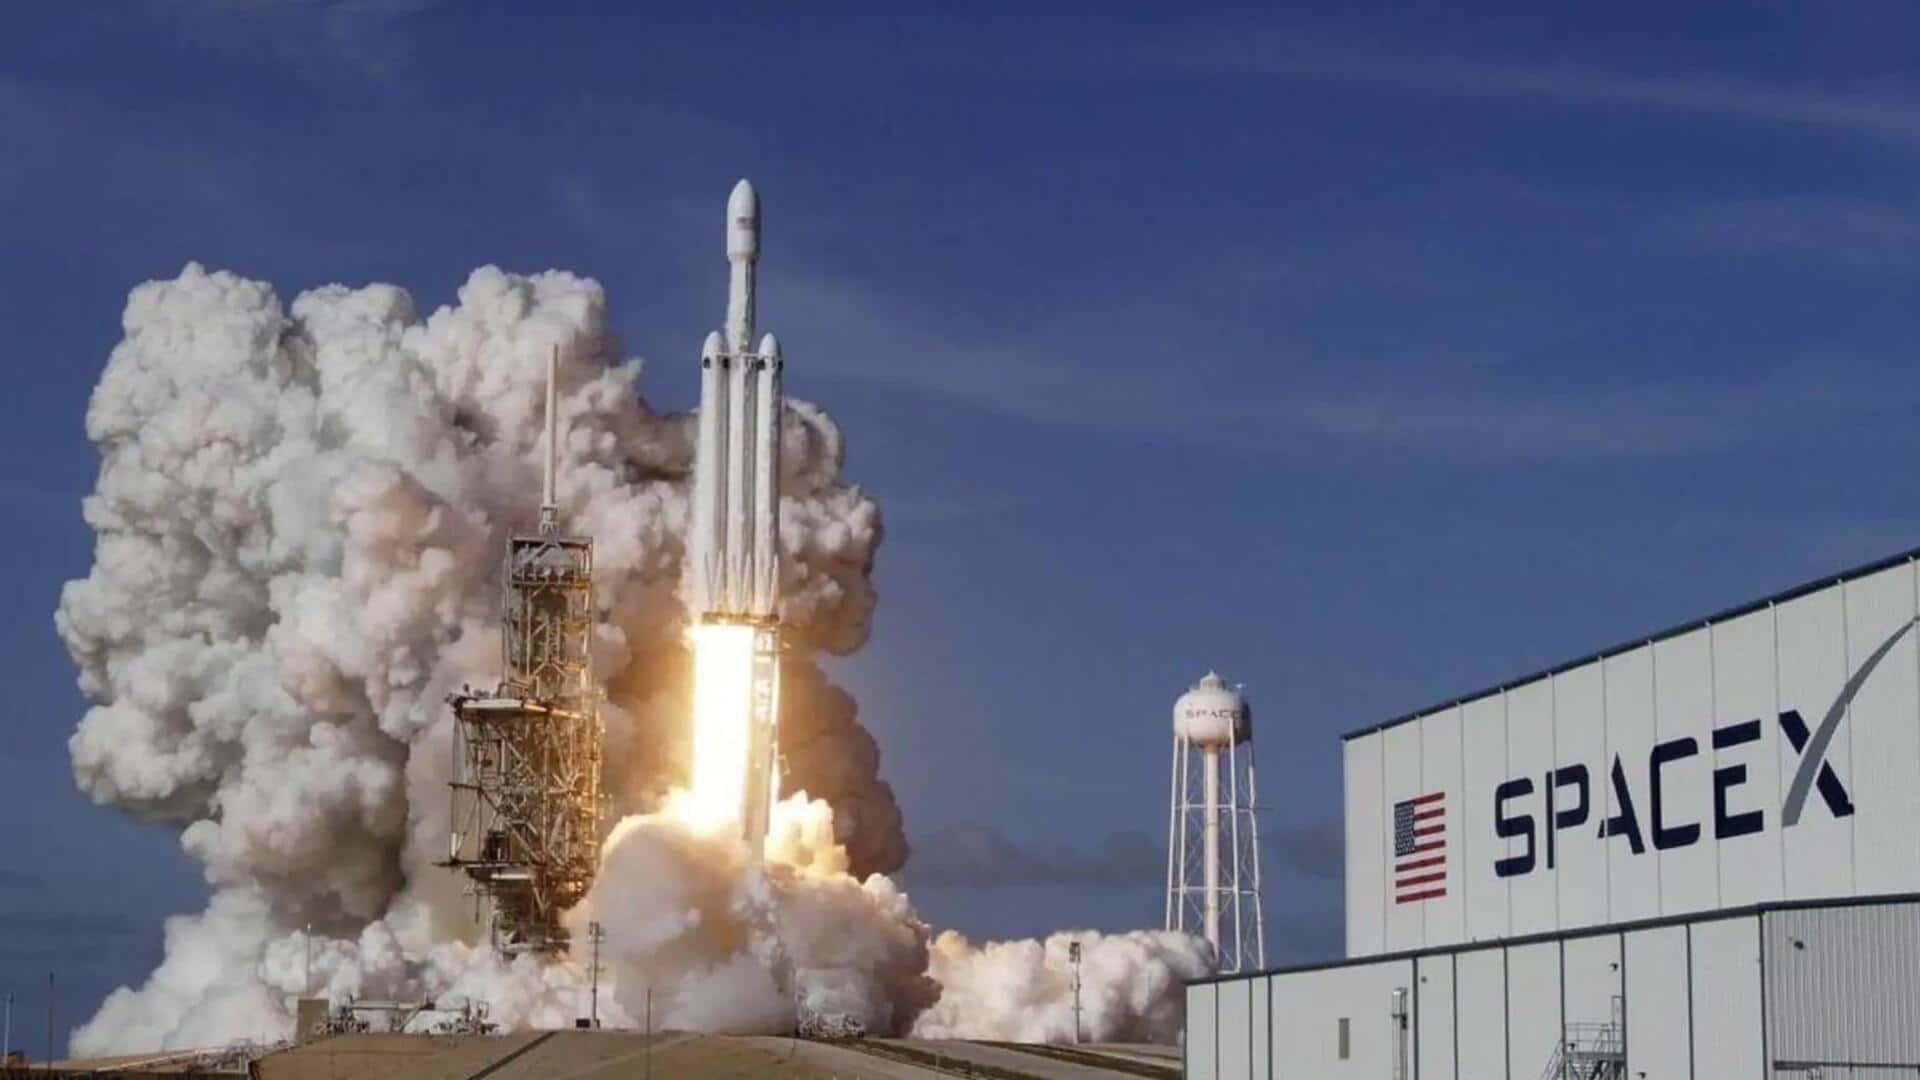 स्पेस-X ने 22 नए स्टारलिंक सैटेलाइट्स किए लॉन्च, 4,900 कर रहे हैं काम 